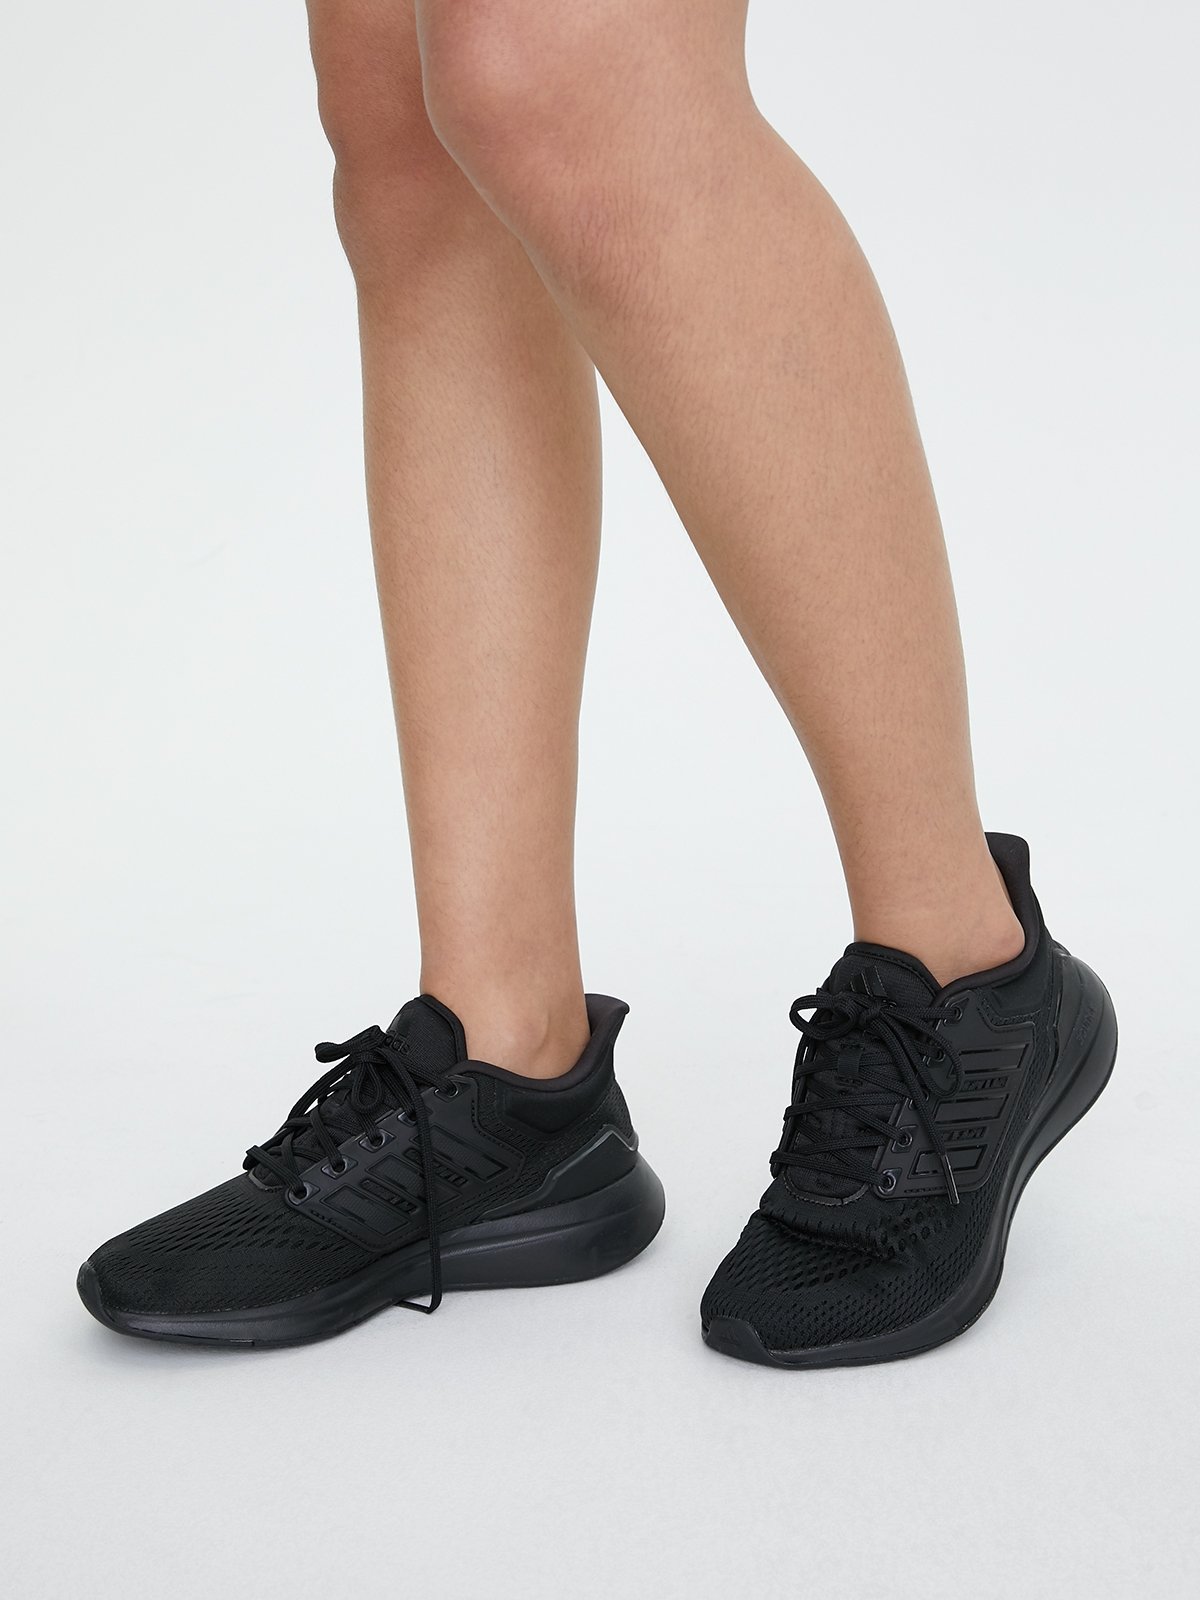 EQ21 Run Shoes - Core Black/Core Black/ Core Black - Pomelo Fashion